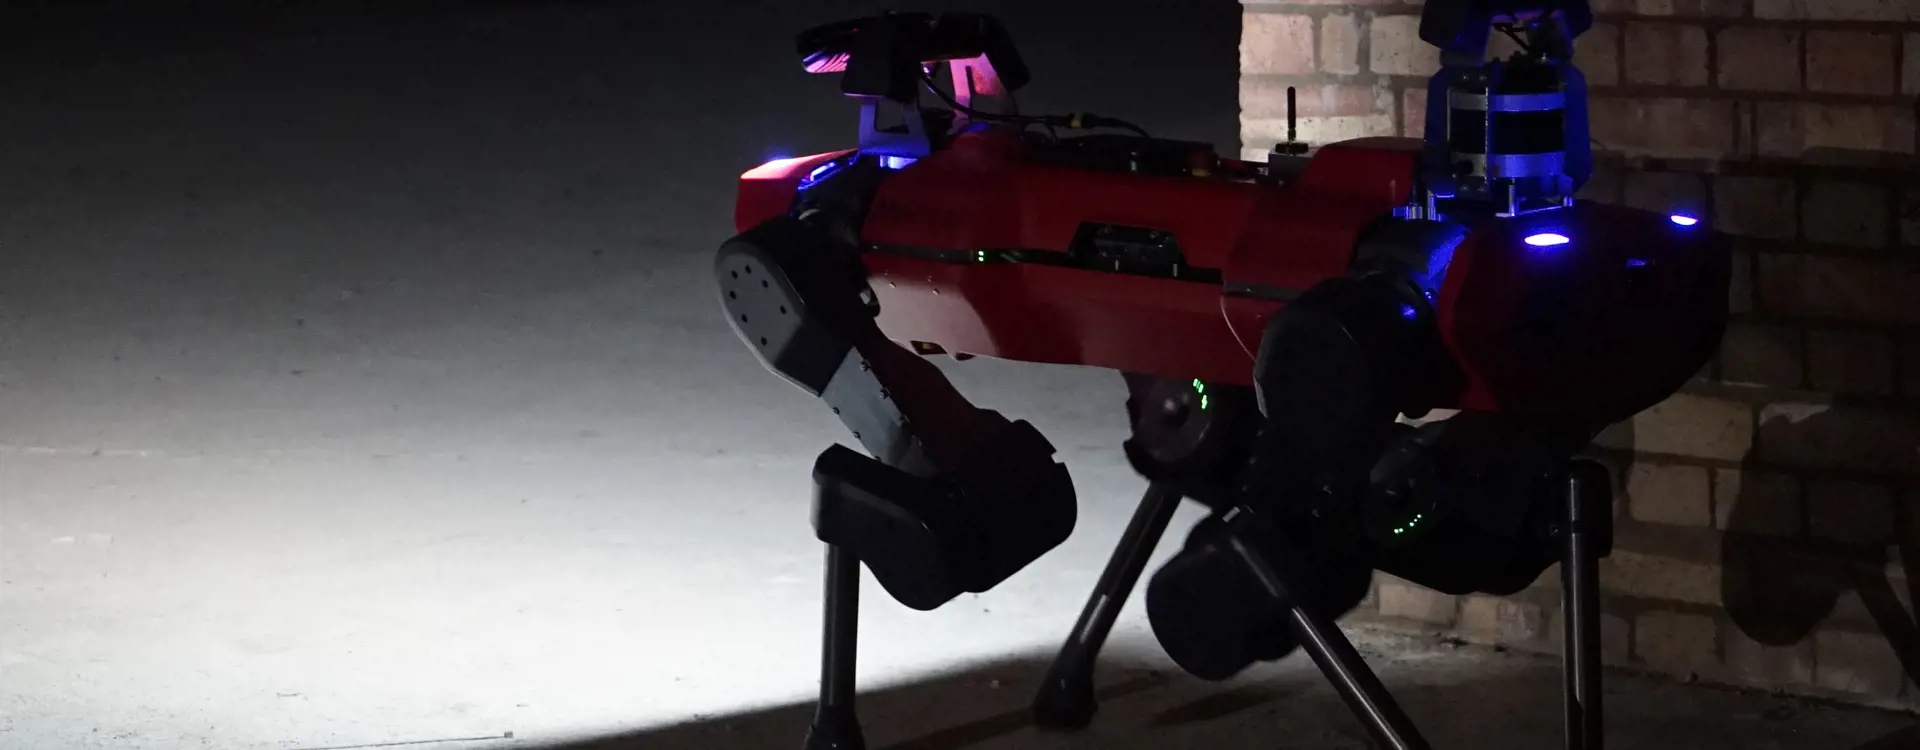 Red anymal c robot surveying dark underground site. 